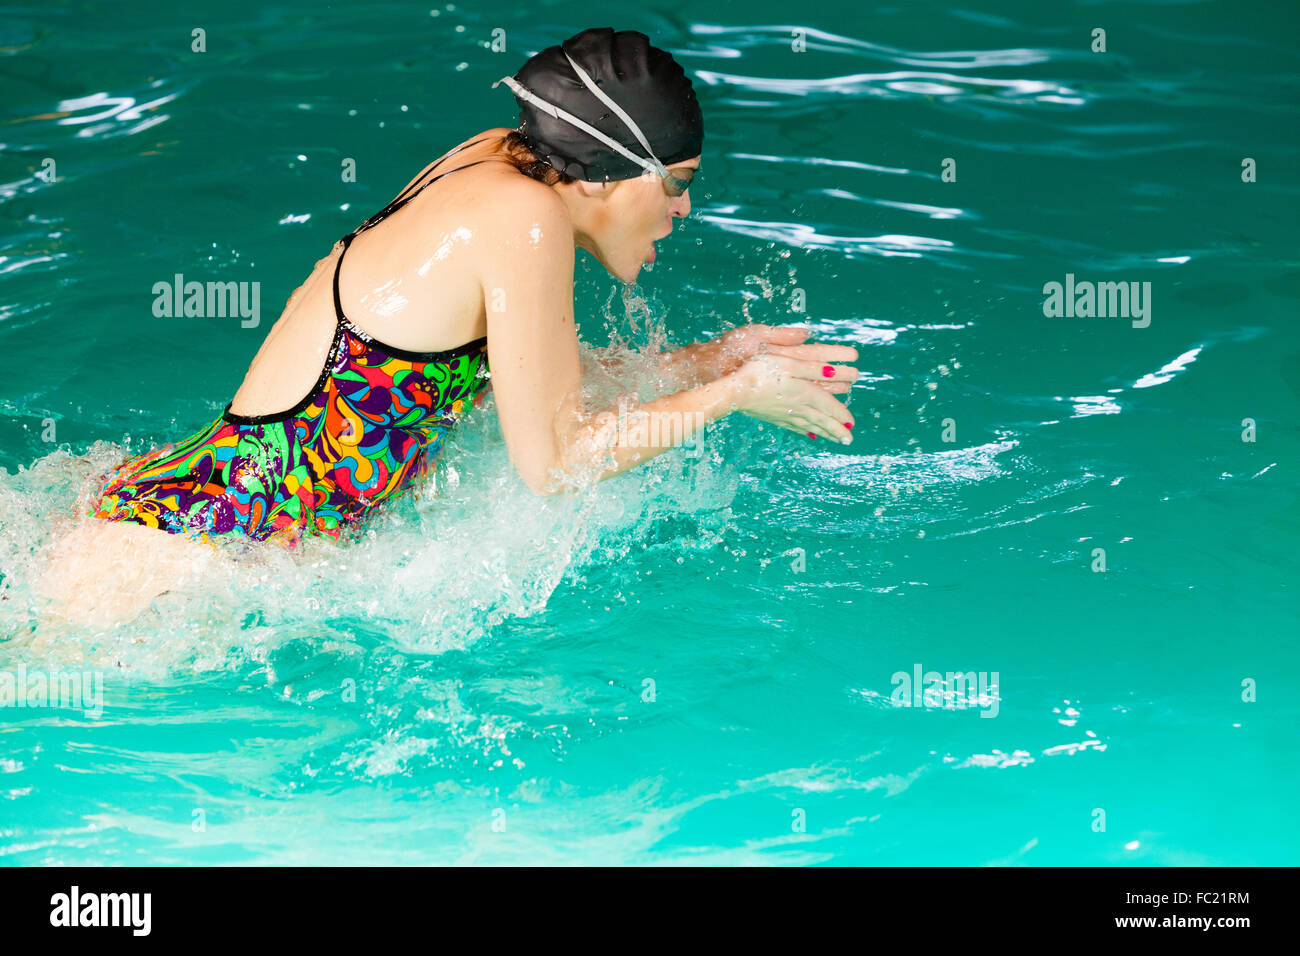 Swimming woman in pool. Stock Photo